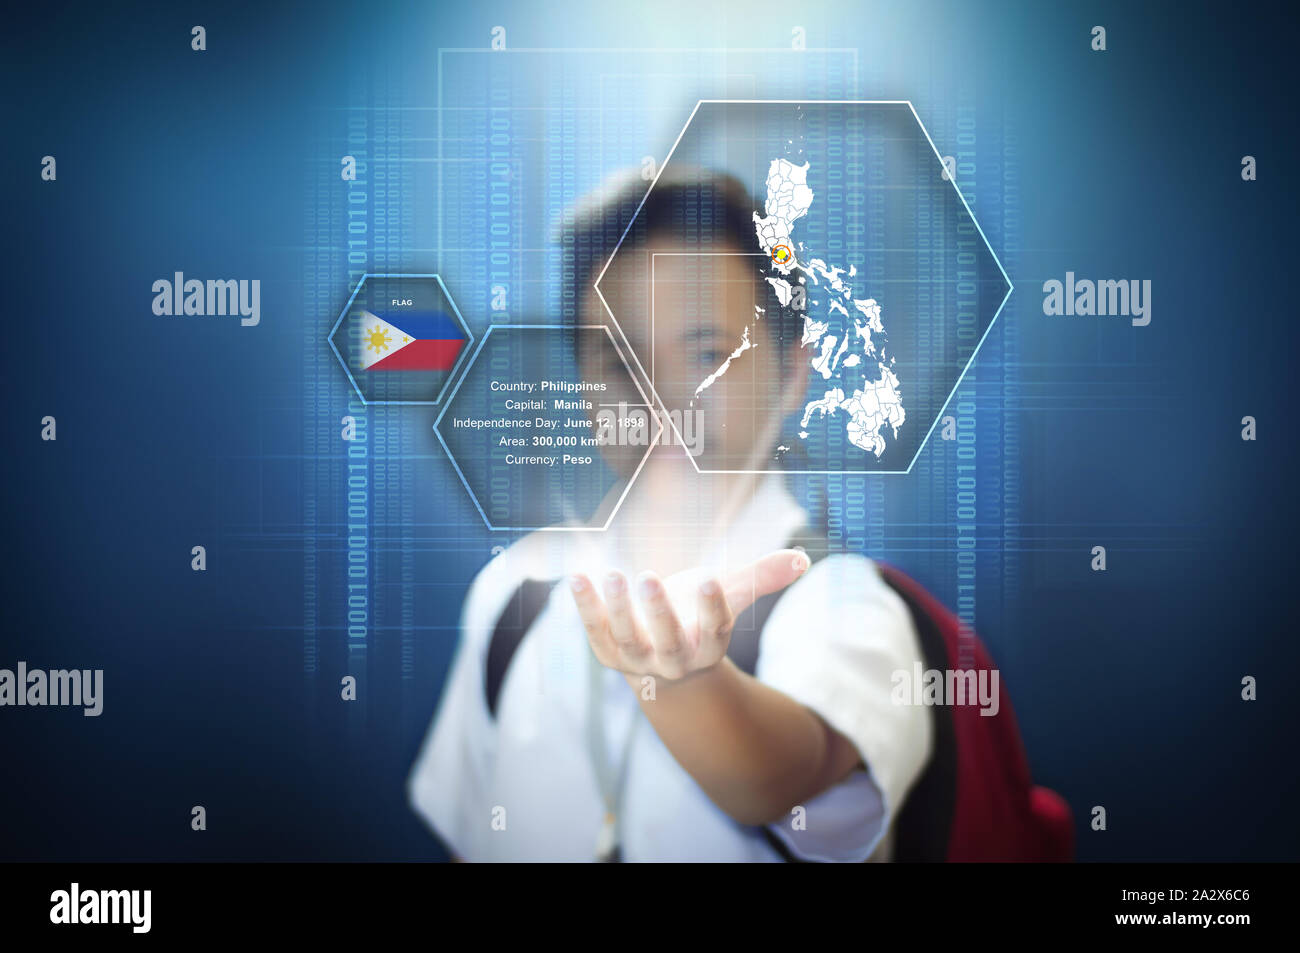 School Boy präsentiert einen virtuellen Bildschirm hologramm Technologie des Landes Philippinen mit Fakten. Isolierte blauer Hintergrund mit vignette Wirkung. Stockfoto